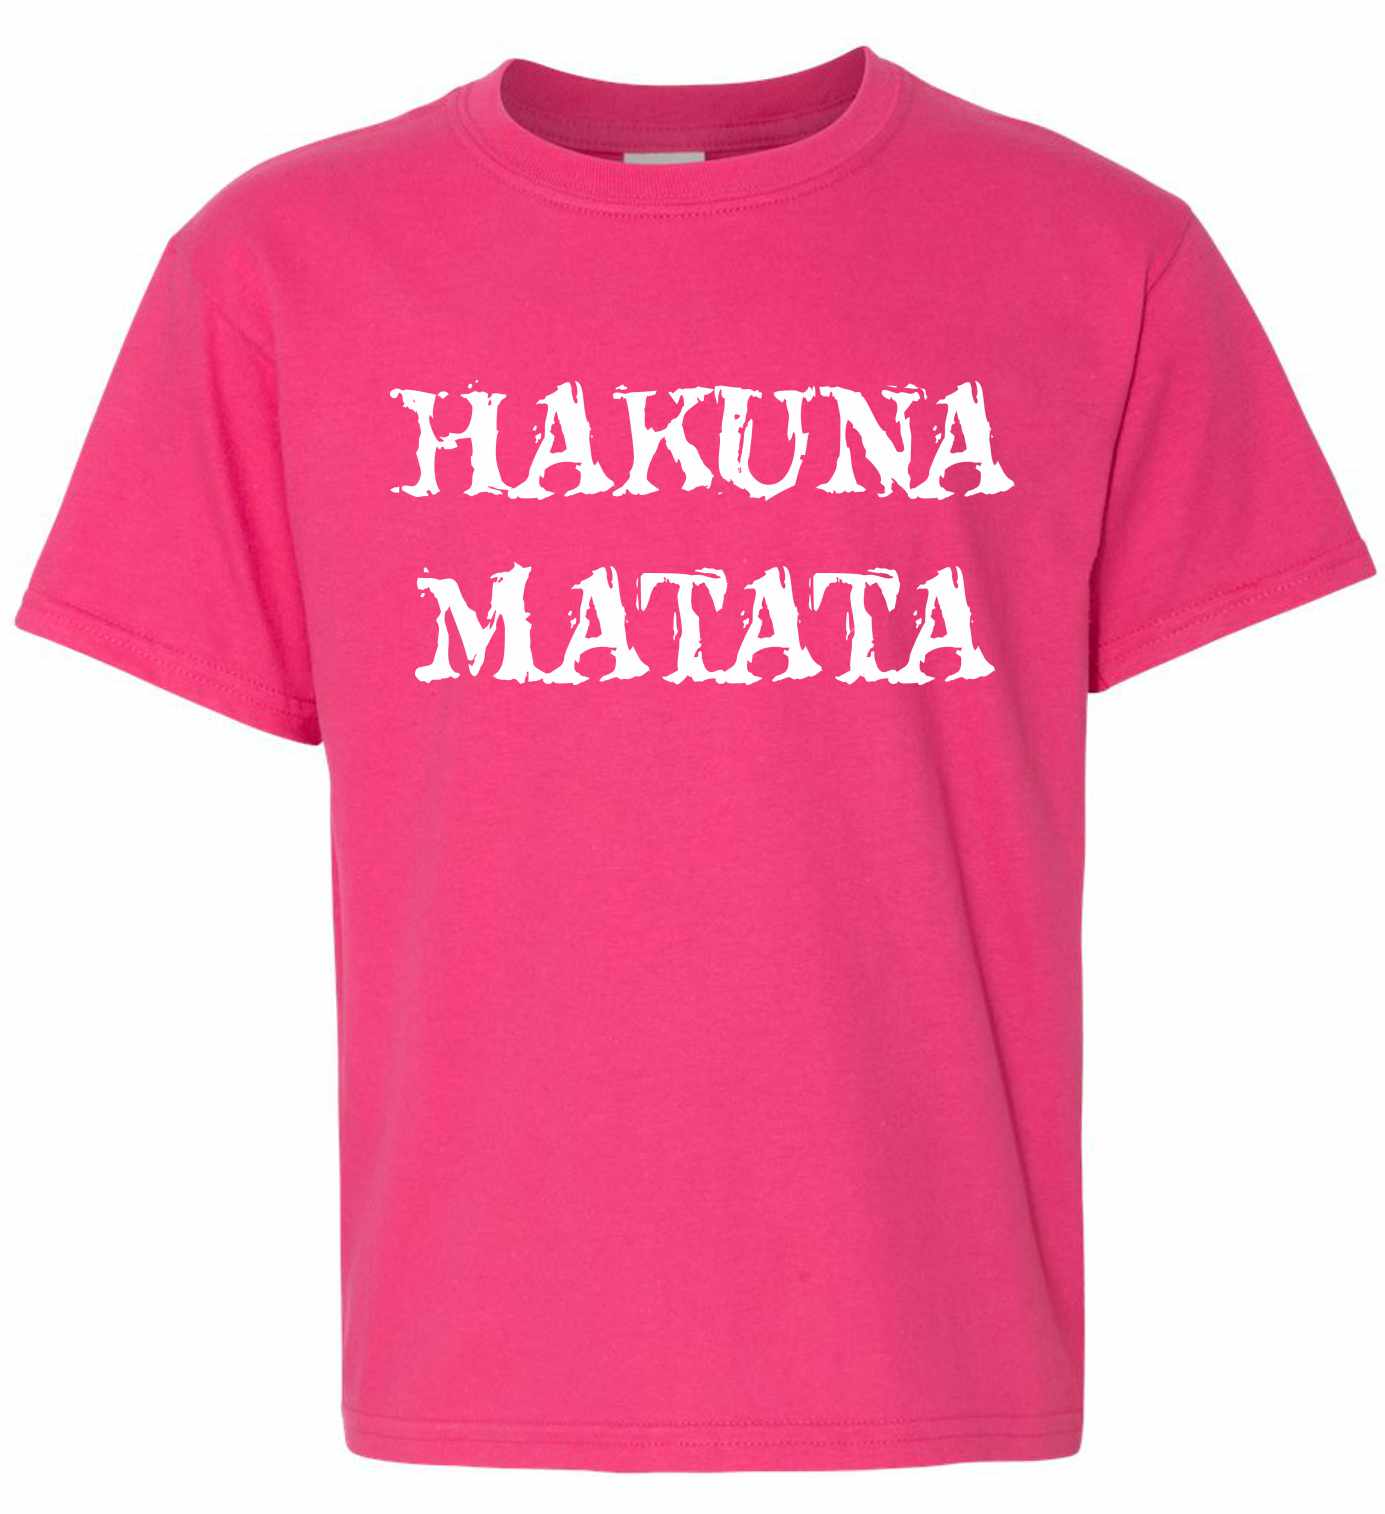 HAKUNA MATATA on Kids T-Shirt (#903-201)